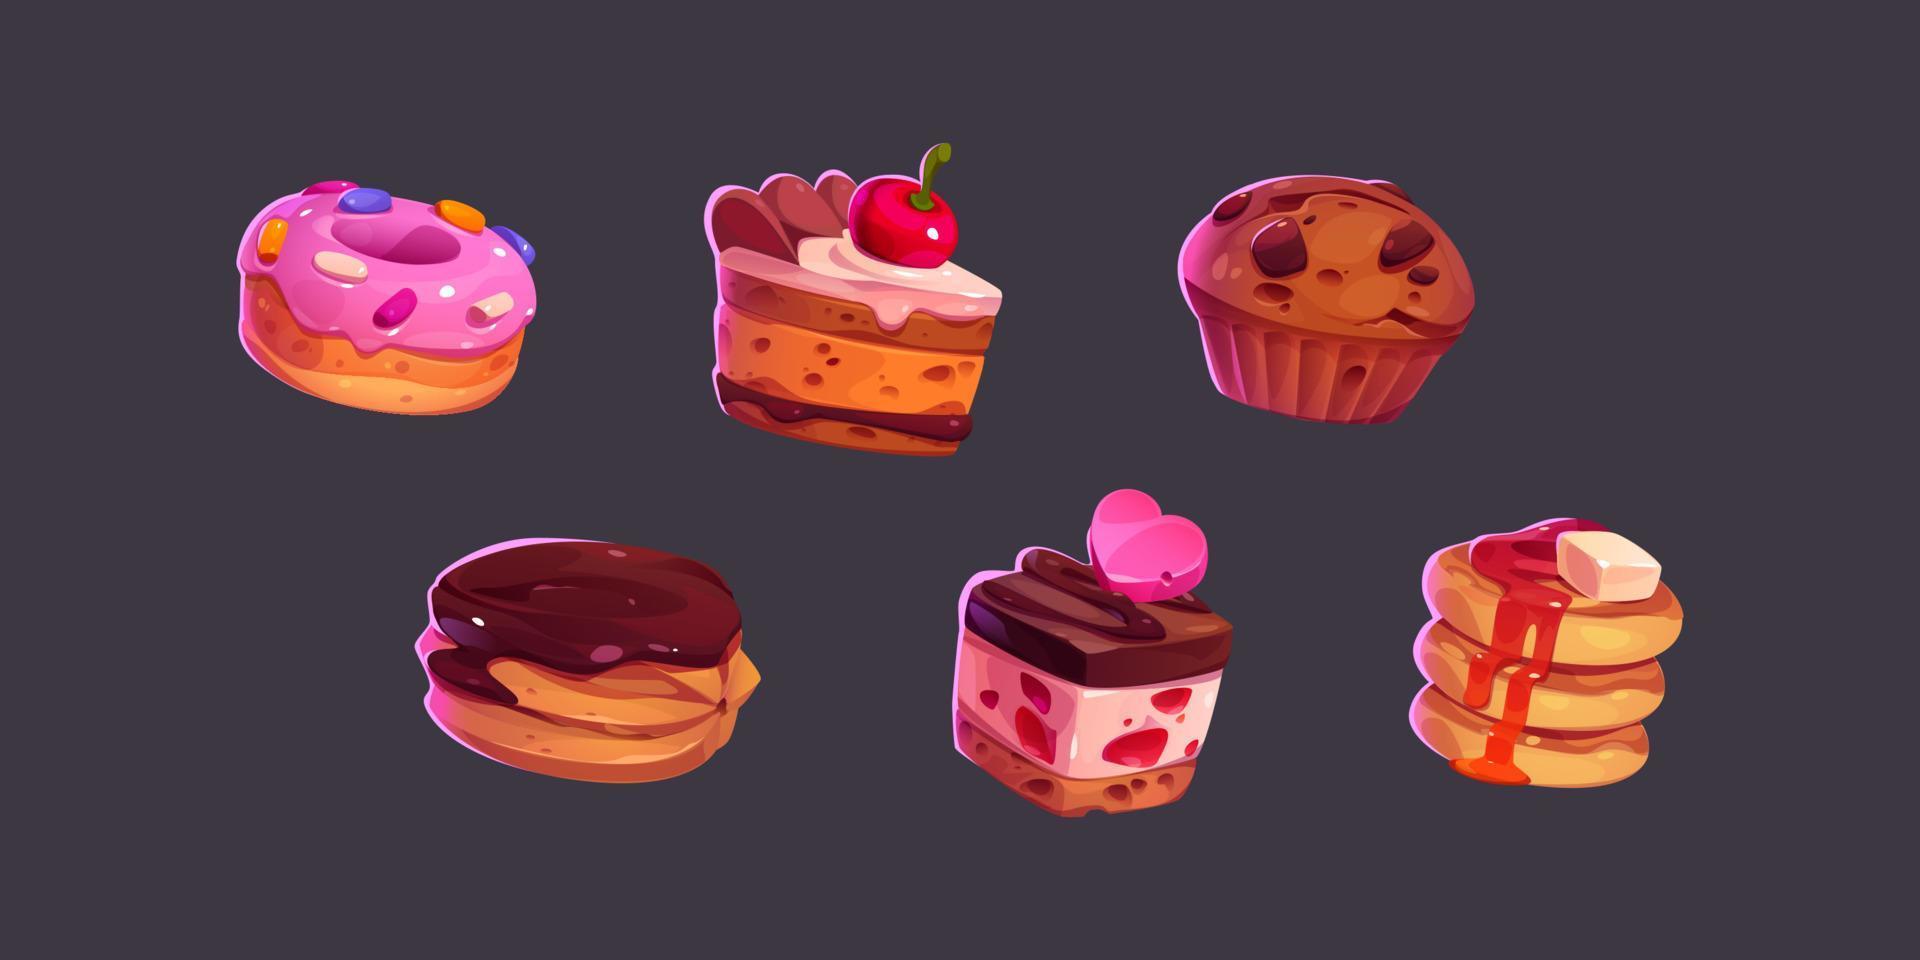 iconos del juego pasteles, dulces y postres y pasteles vector